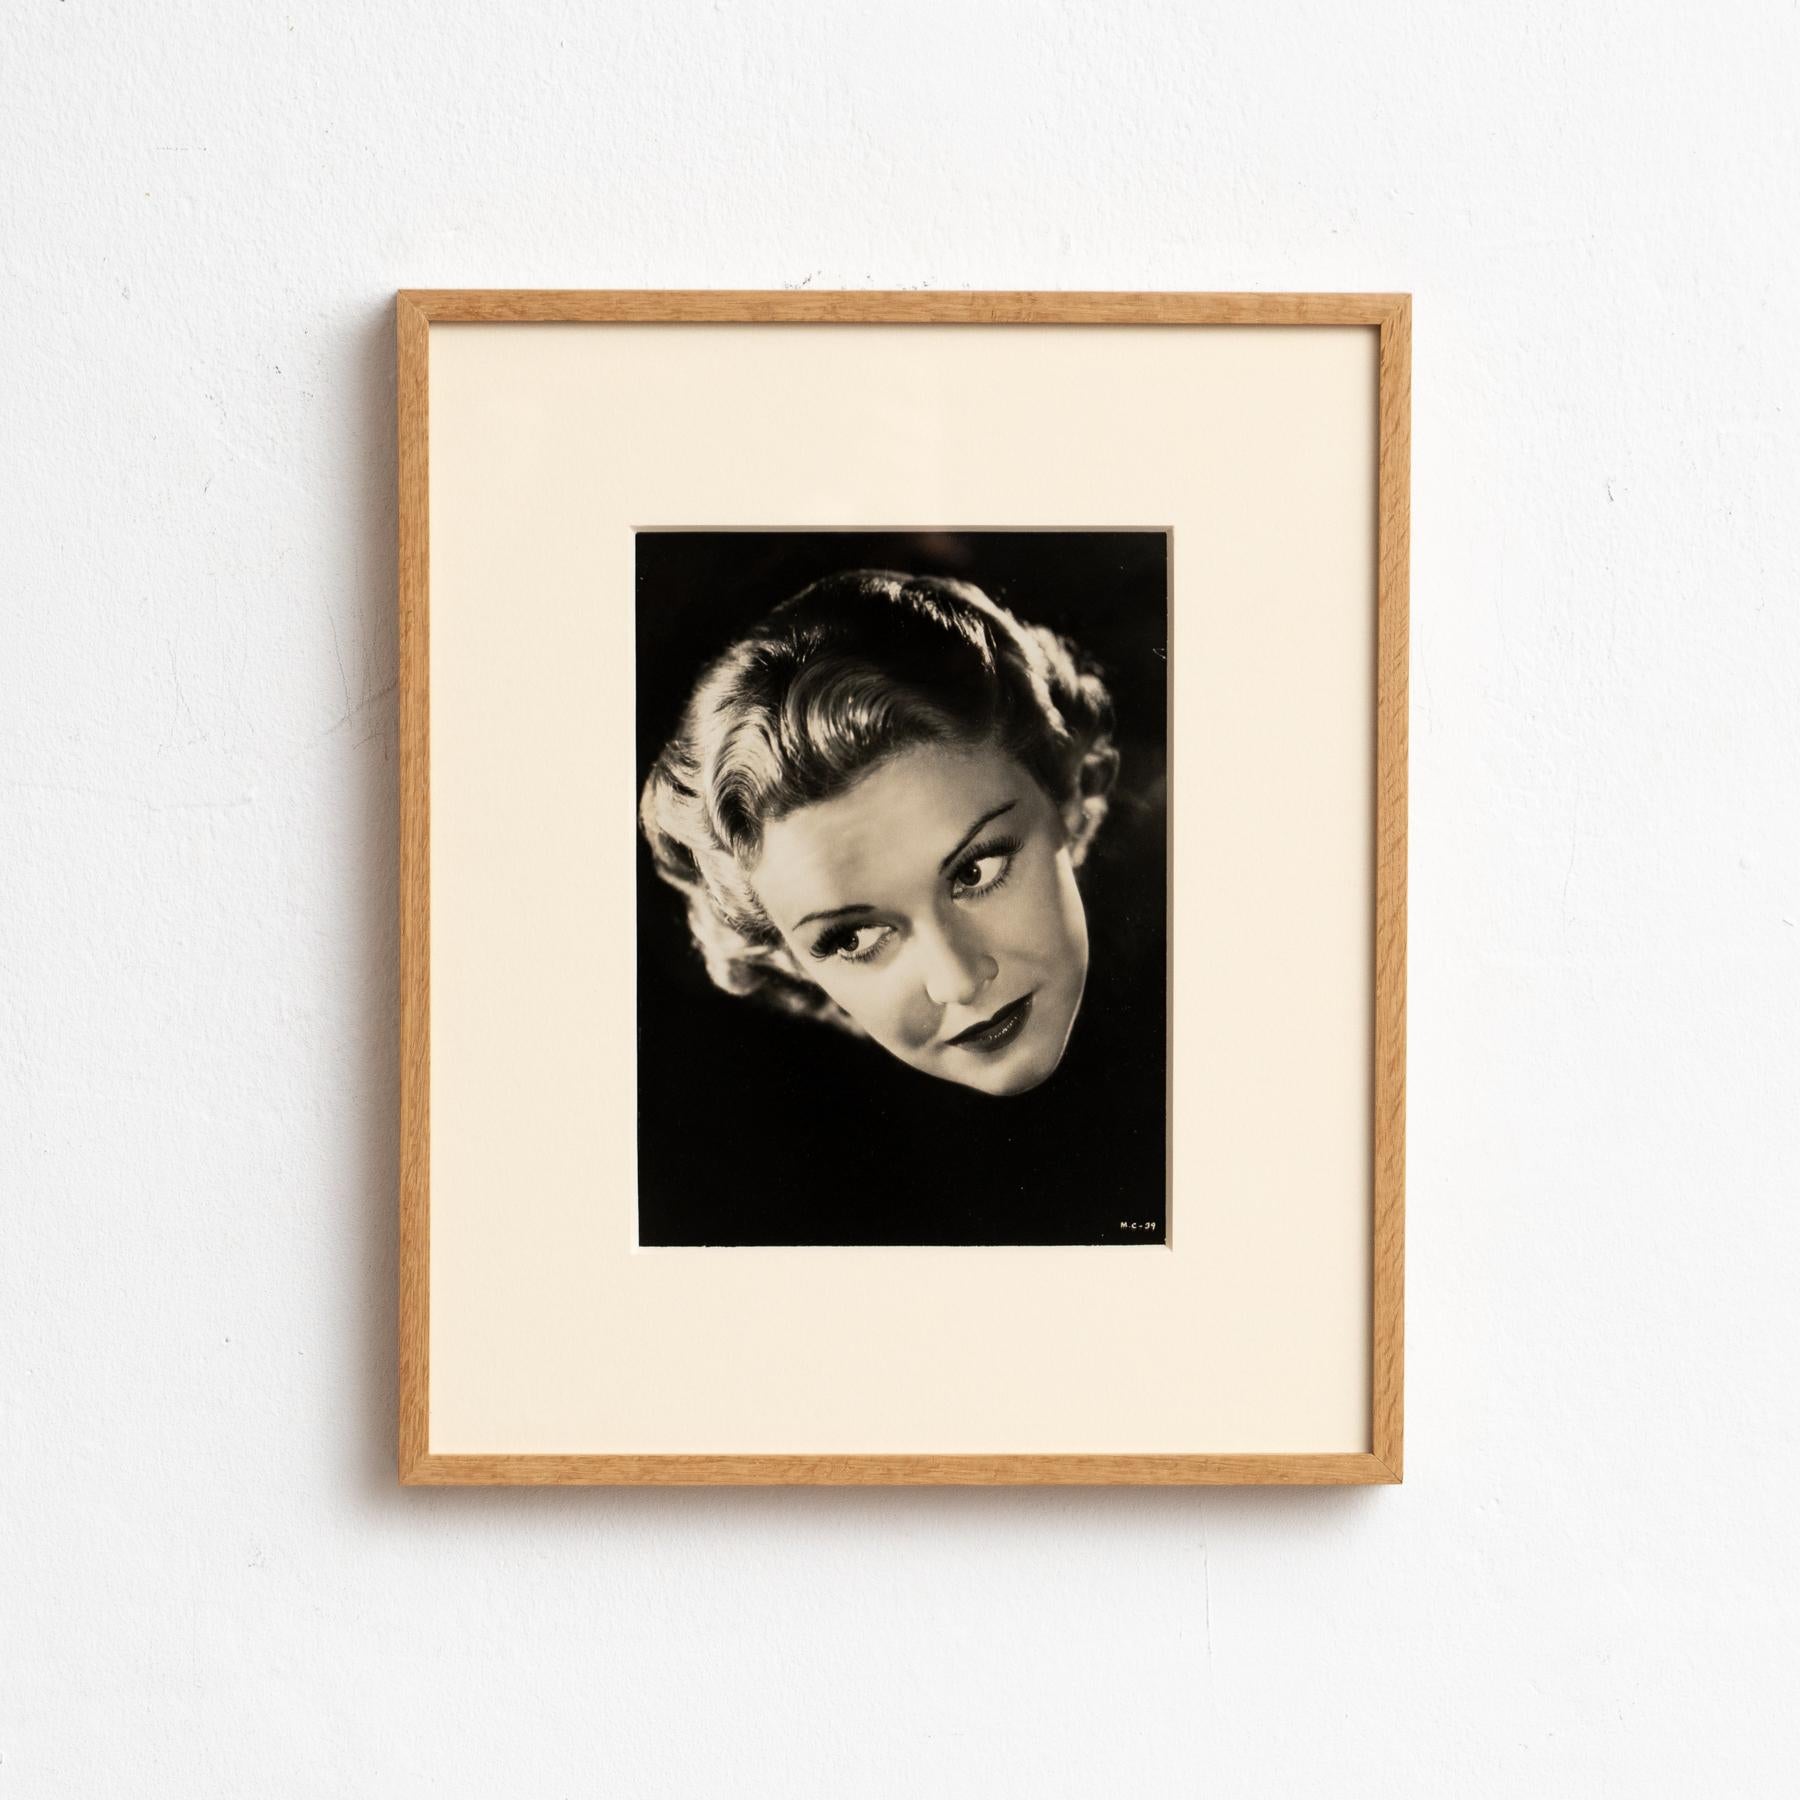 Gerahmte Porträtfotografie in Schwarz-Weiß von Madeline Carroll.

CIRCA 1938
Fotografie von Walter Wagner
Gelatinesilberdruck
Schauspielerin: Madeline Carroll
Film: 